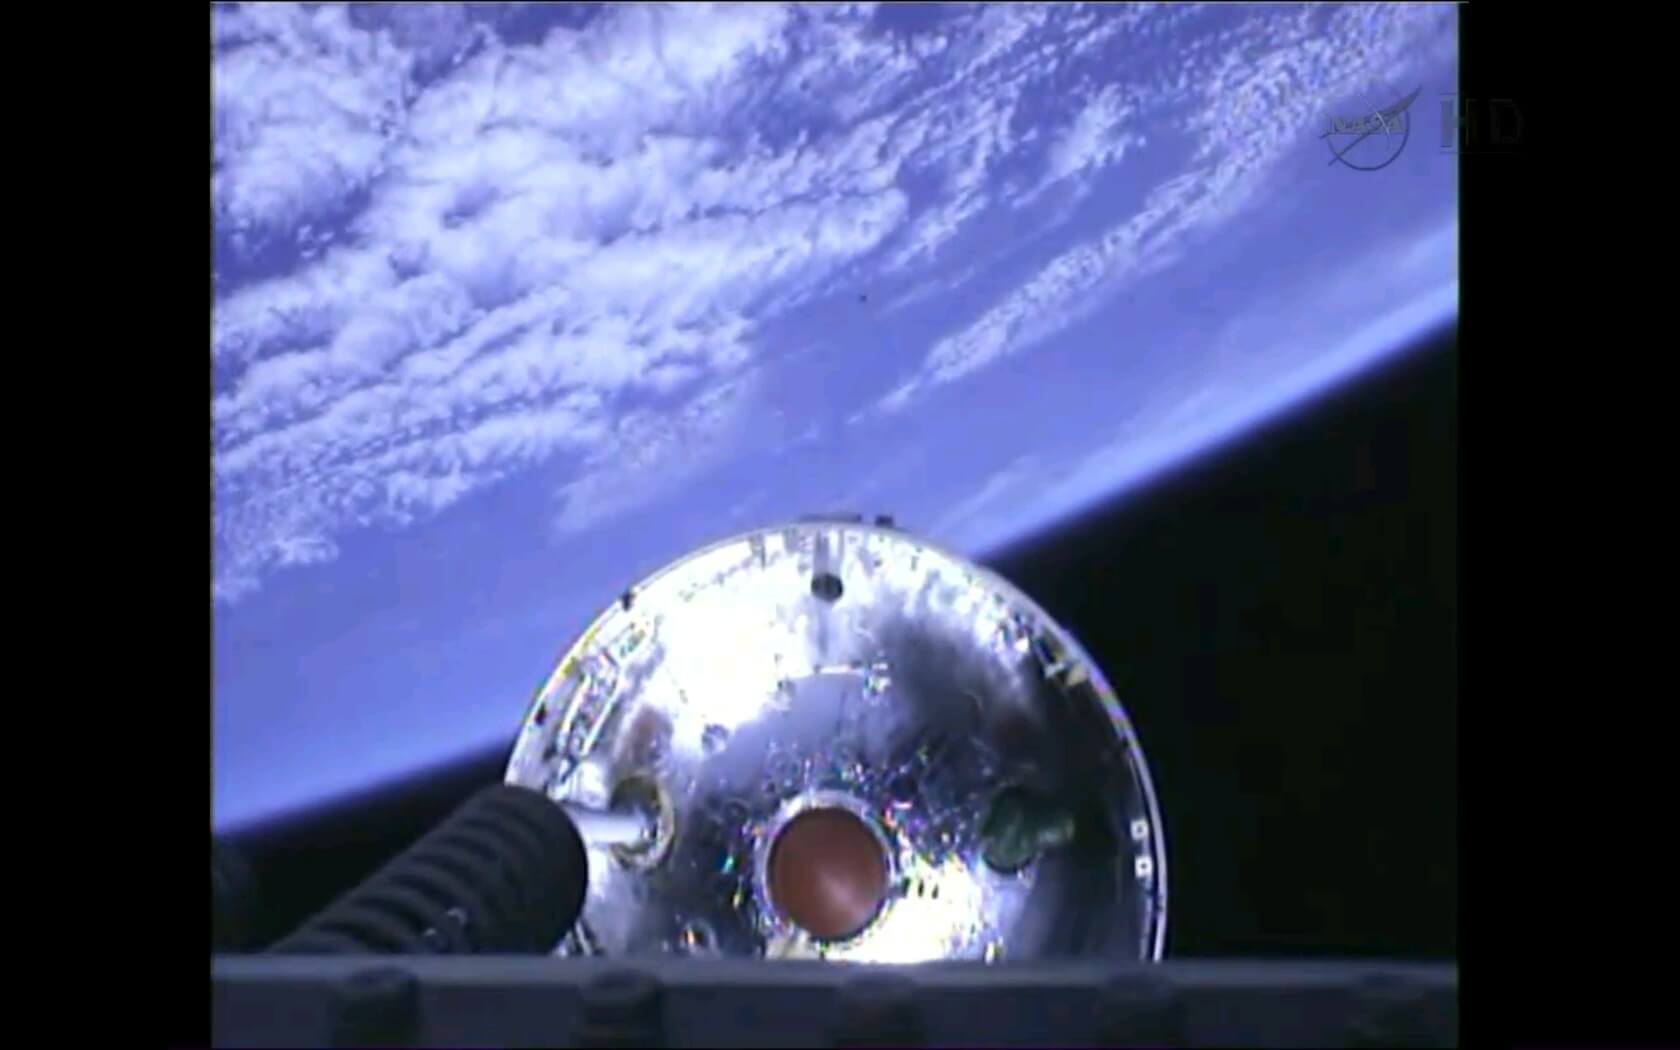 הפרדת השלב הראשון של טיל האנתרס הנושא את החללית סיגנוס, 18/3/13. צילום מסך מהטלוויזיה של נאס"א